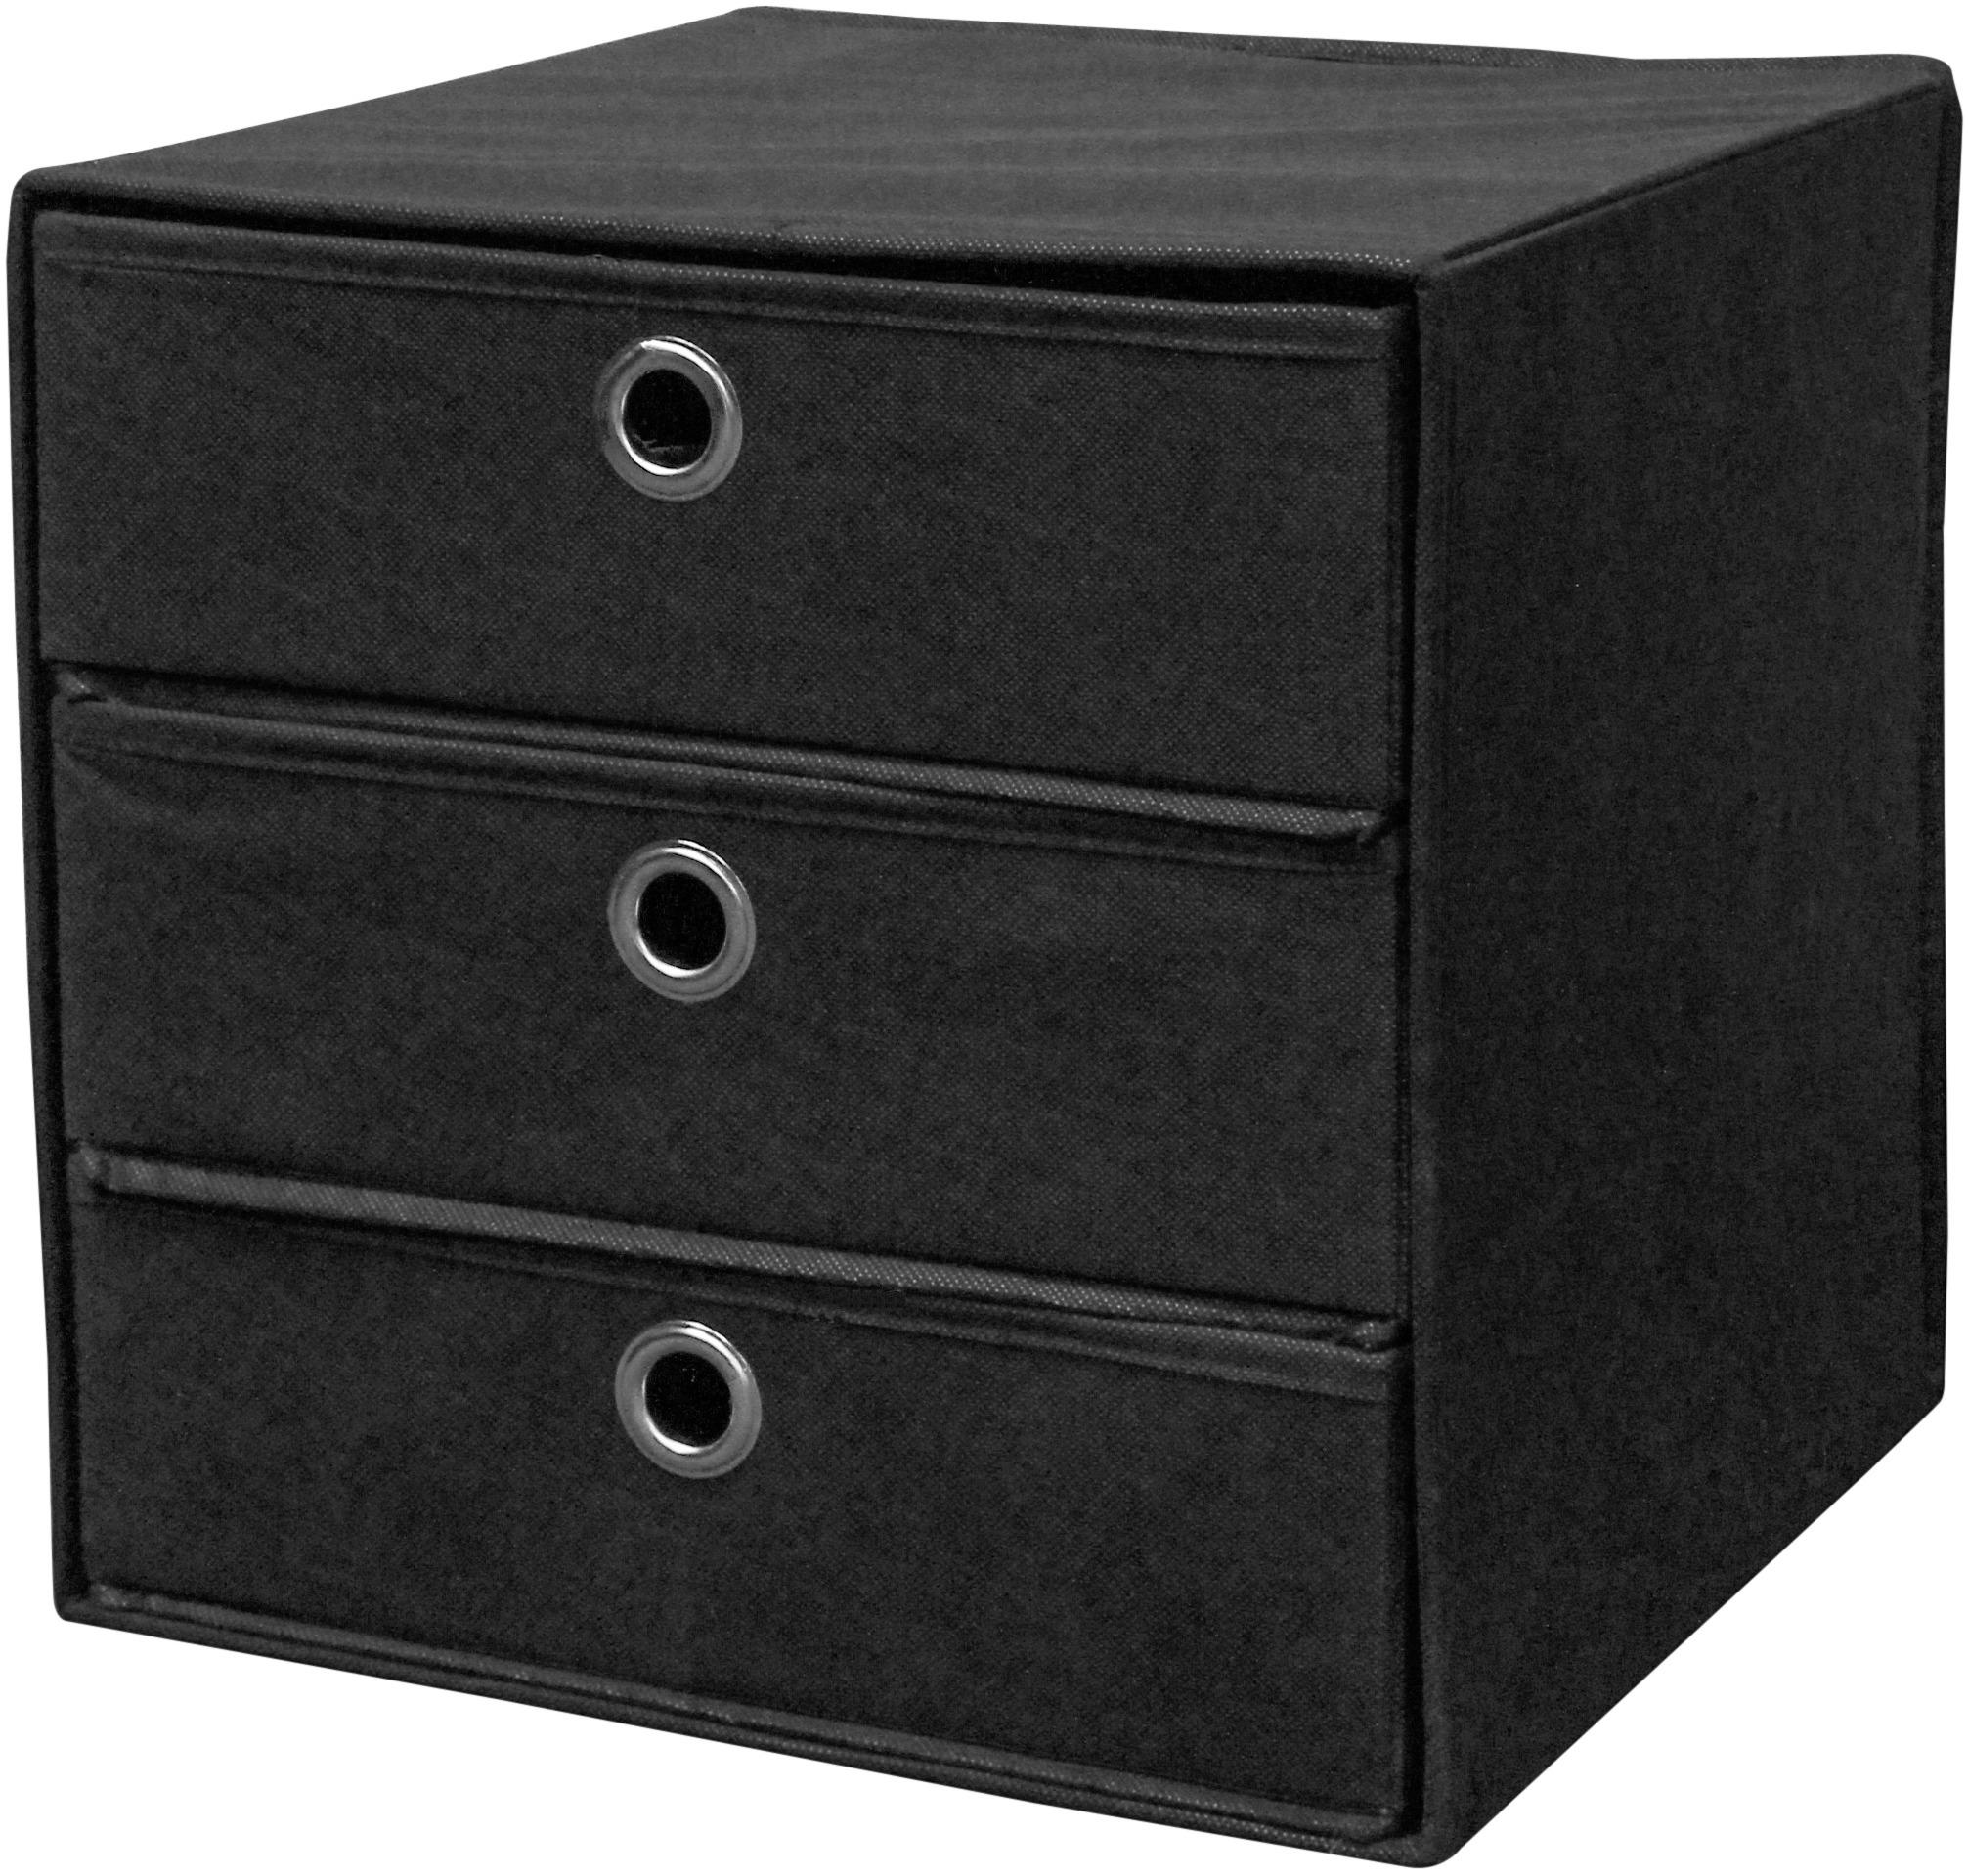 Zásuvkový Box Lisa - černá, Moderní, kov/textil (32/32/32cm)